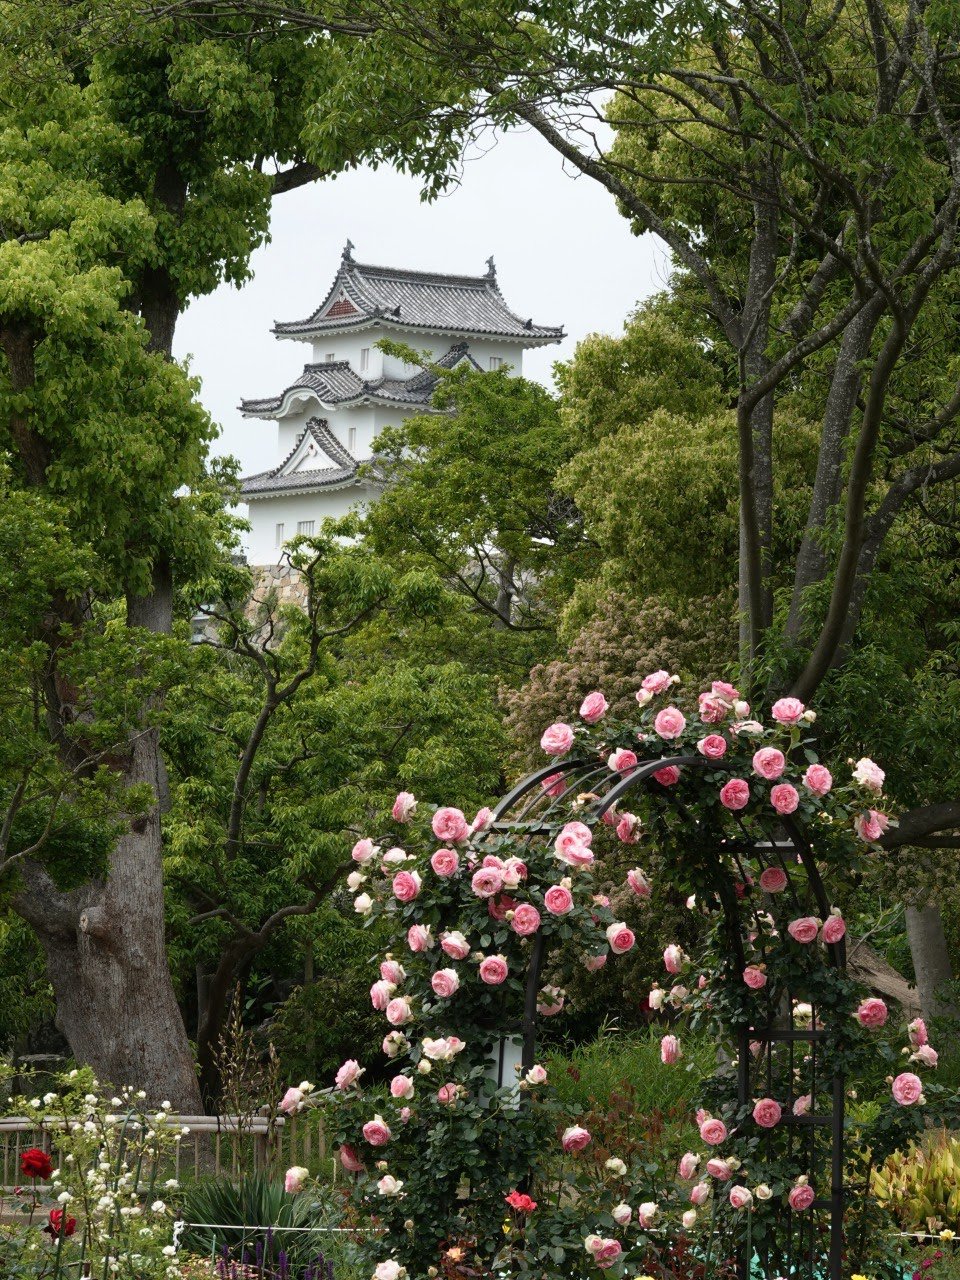 ひょうご はなまち 公財 兵庫県園芸 公園協会 花と緑のまちづくりセンター